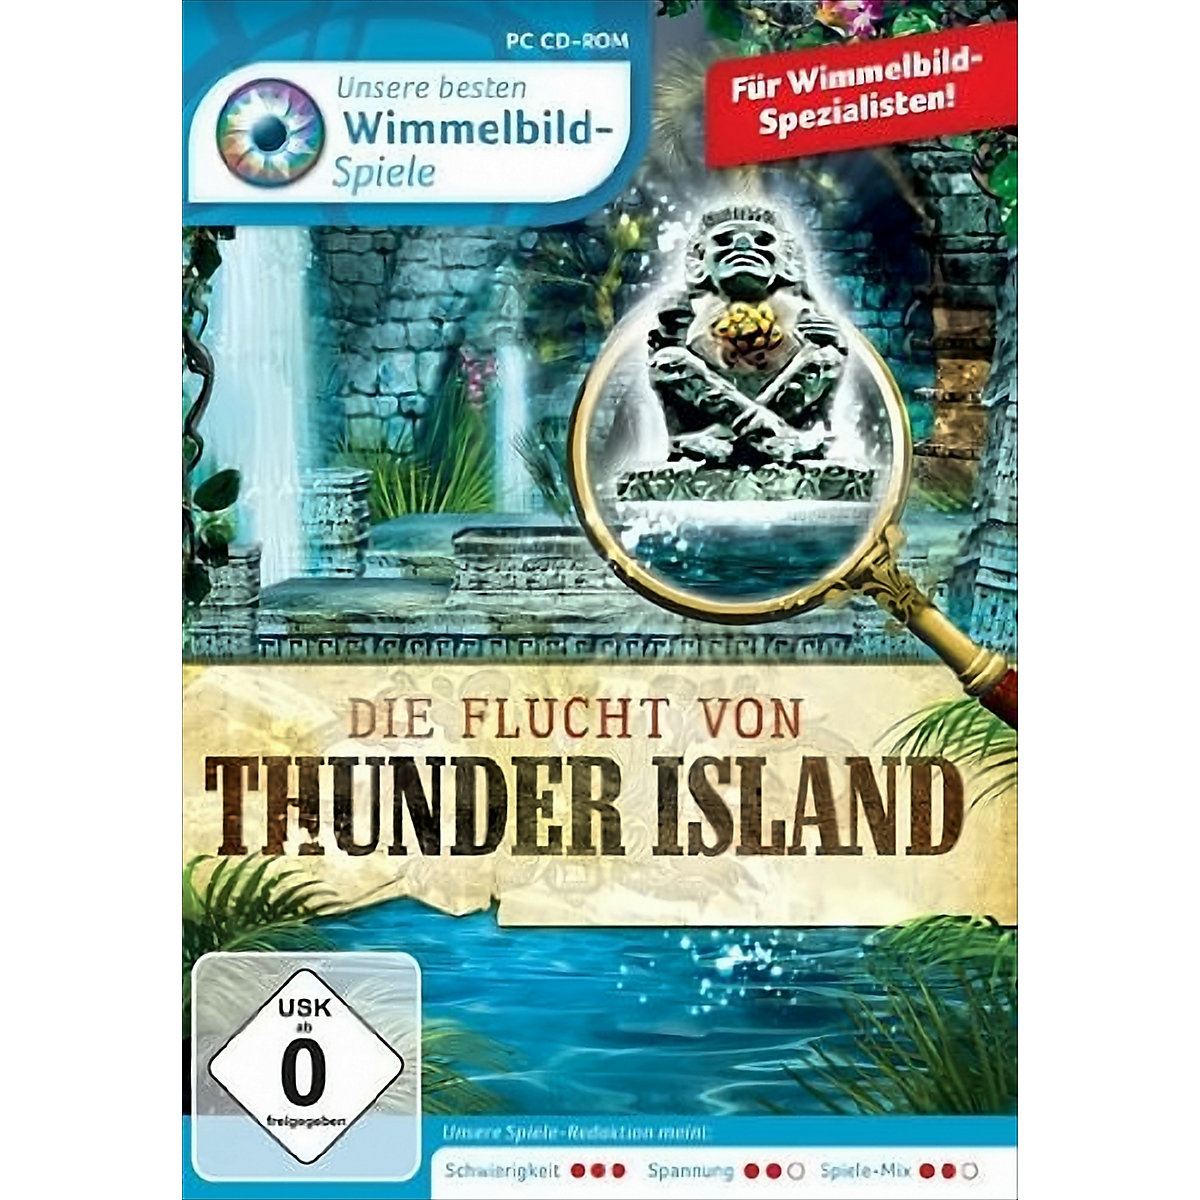 Unsere besten Wimmelbild Spiele Die Flucht von Thunder Island